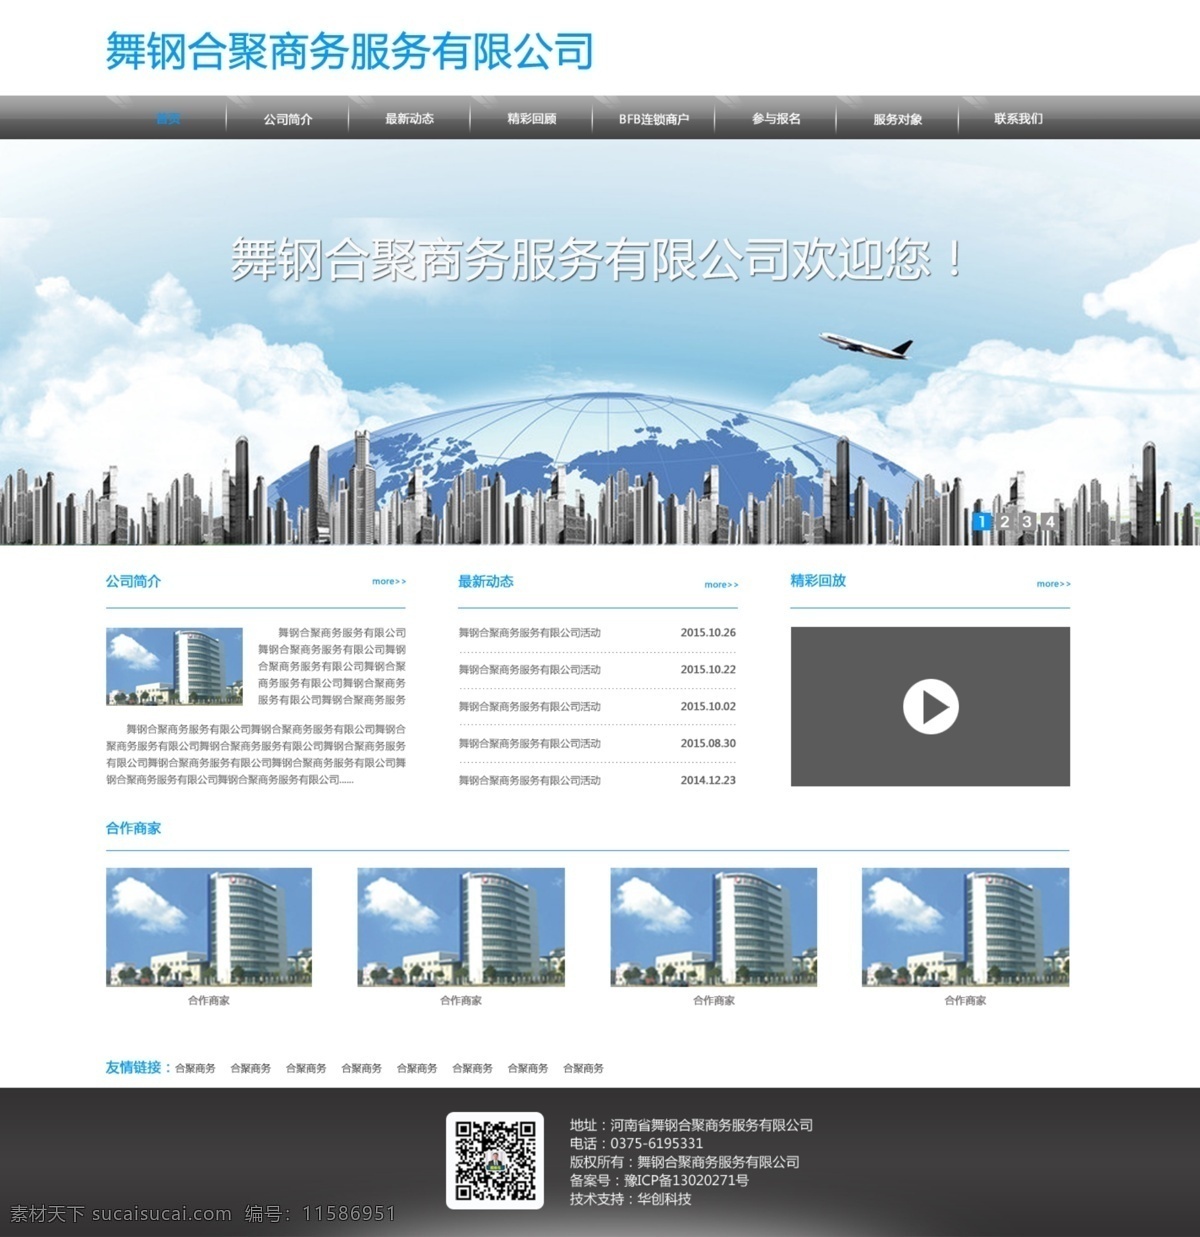 舞钢 合 聚 商务服务 有限公司 网站 首页 模板 web 界面设计 中文模板 白色